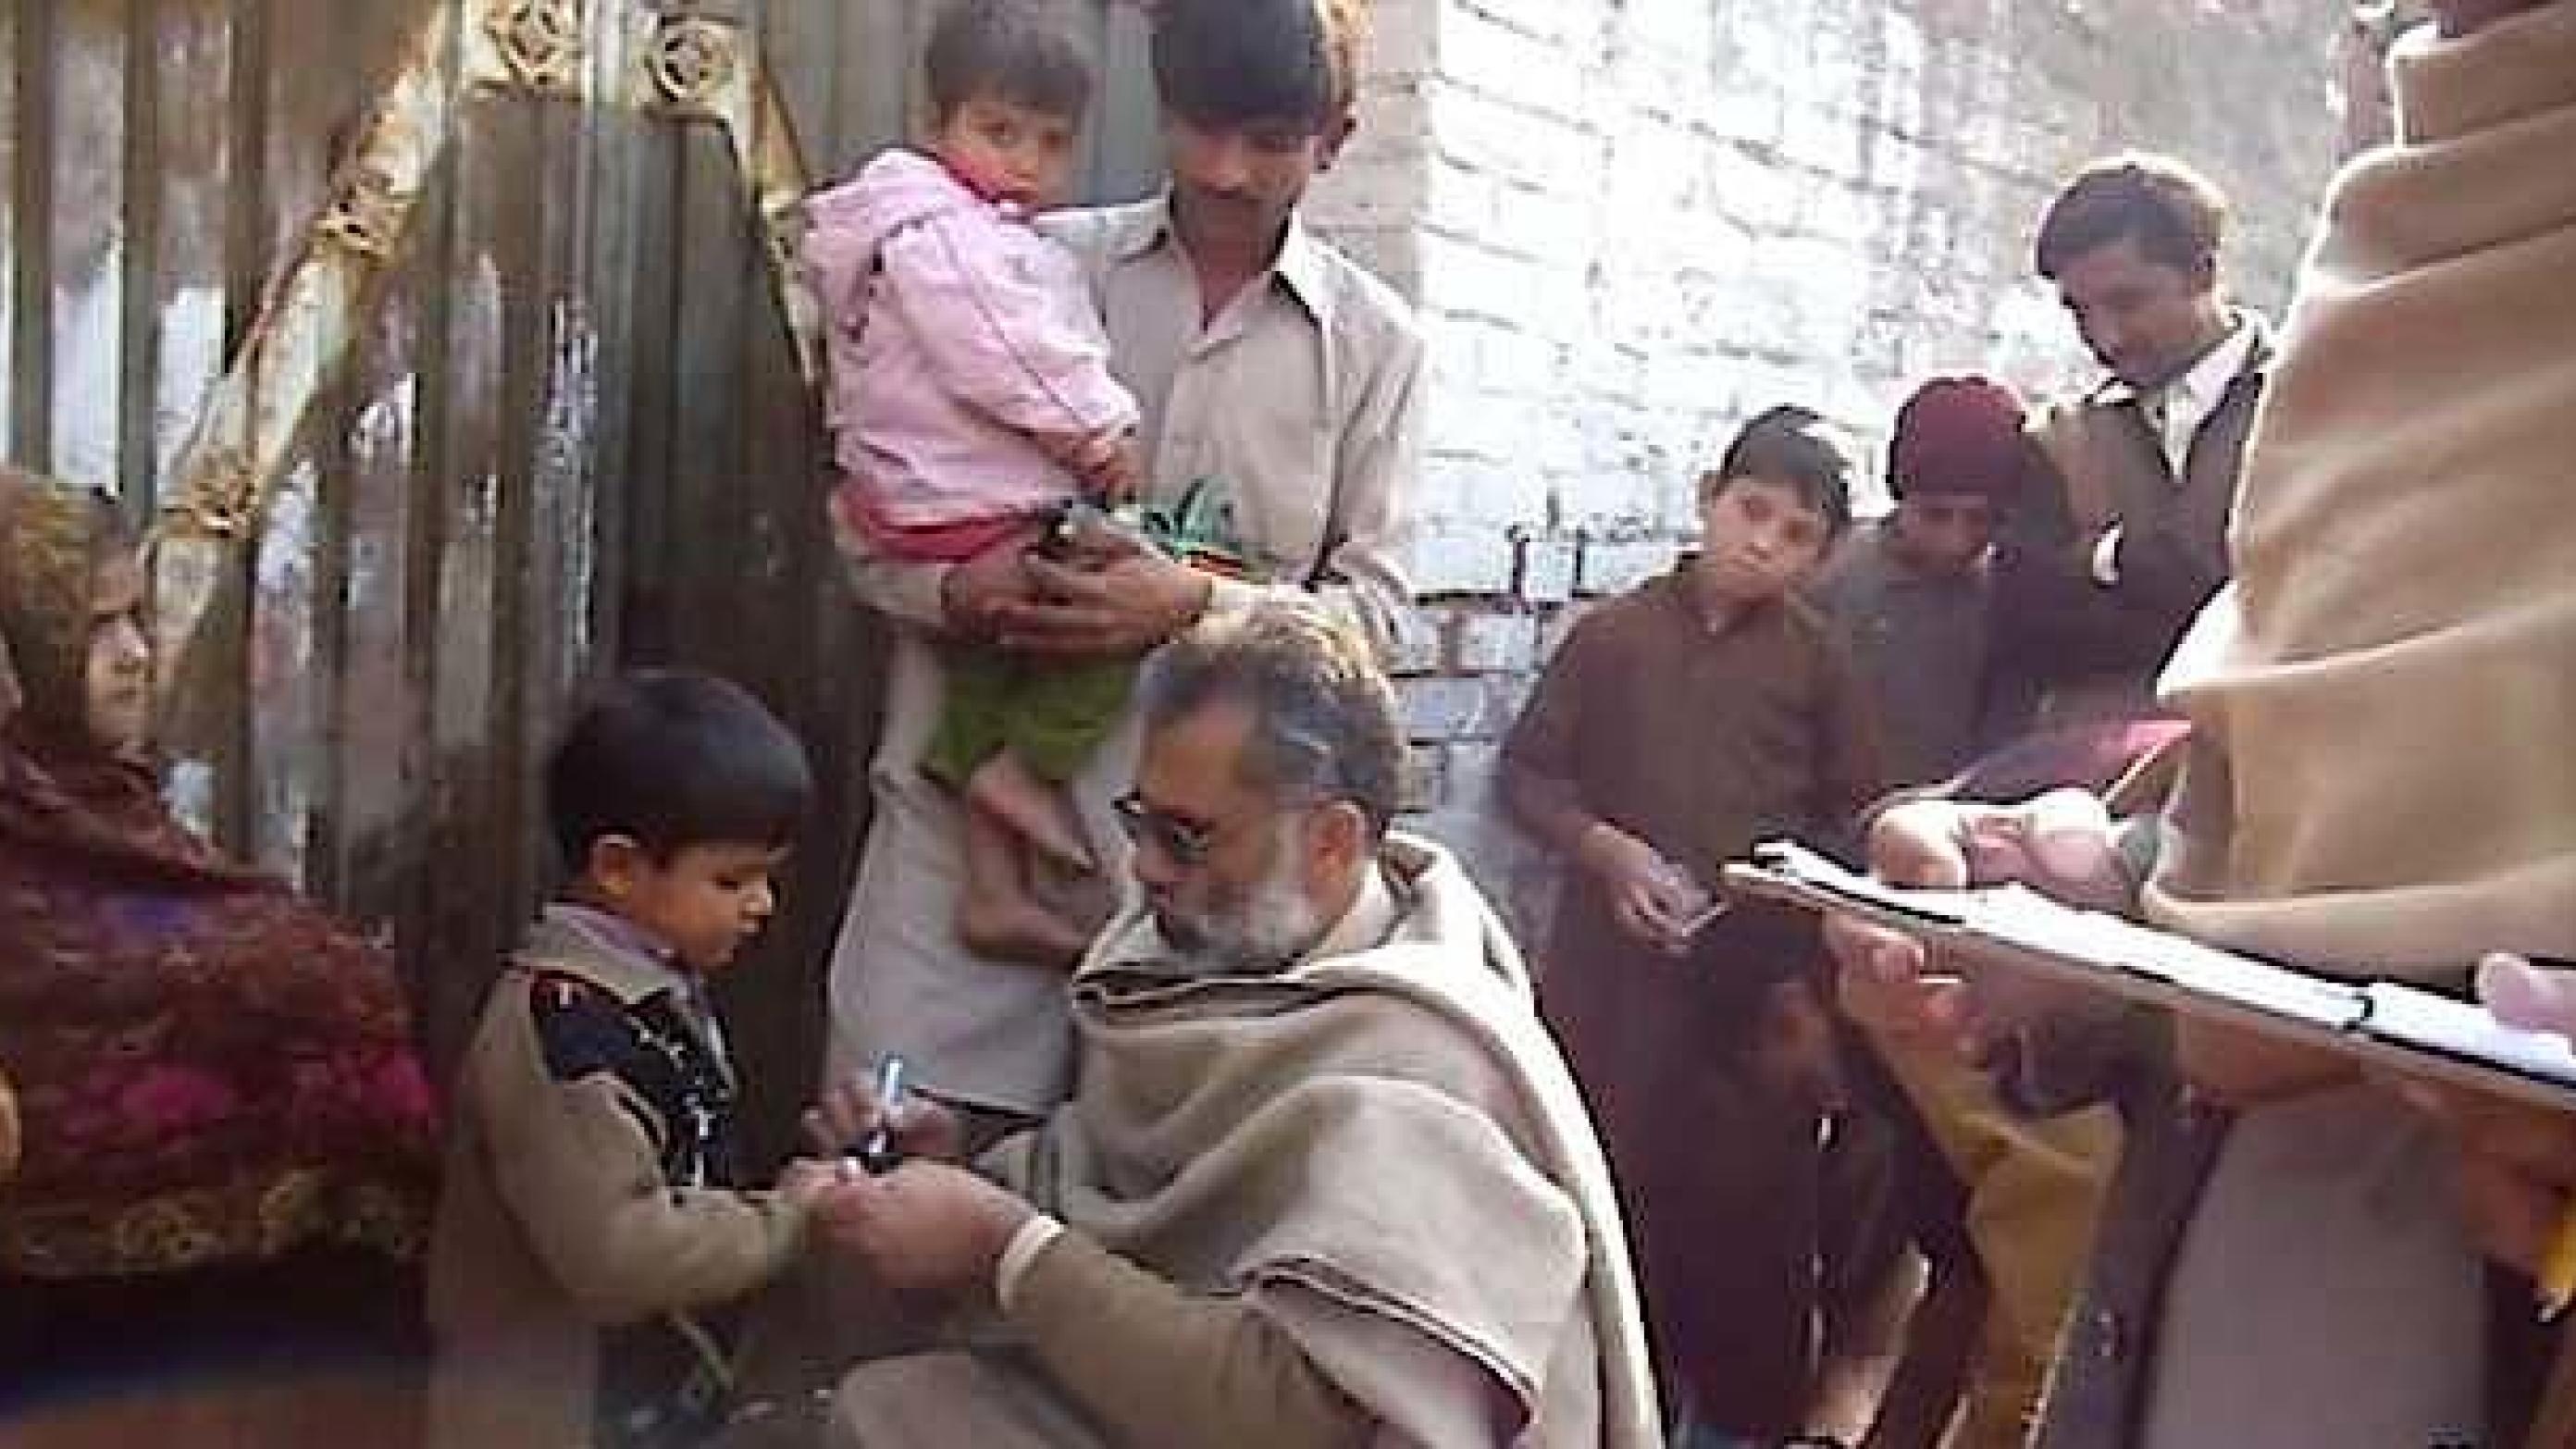 Vaccination i Pakistans Khyber Pakhtunkhwa-provins. Barnets hånd mærkes med blæk efter at dråbevaccinen er givet. (video grab)